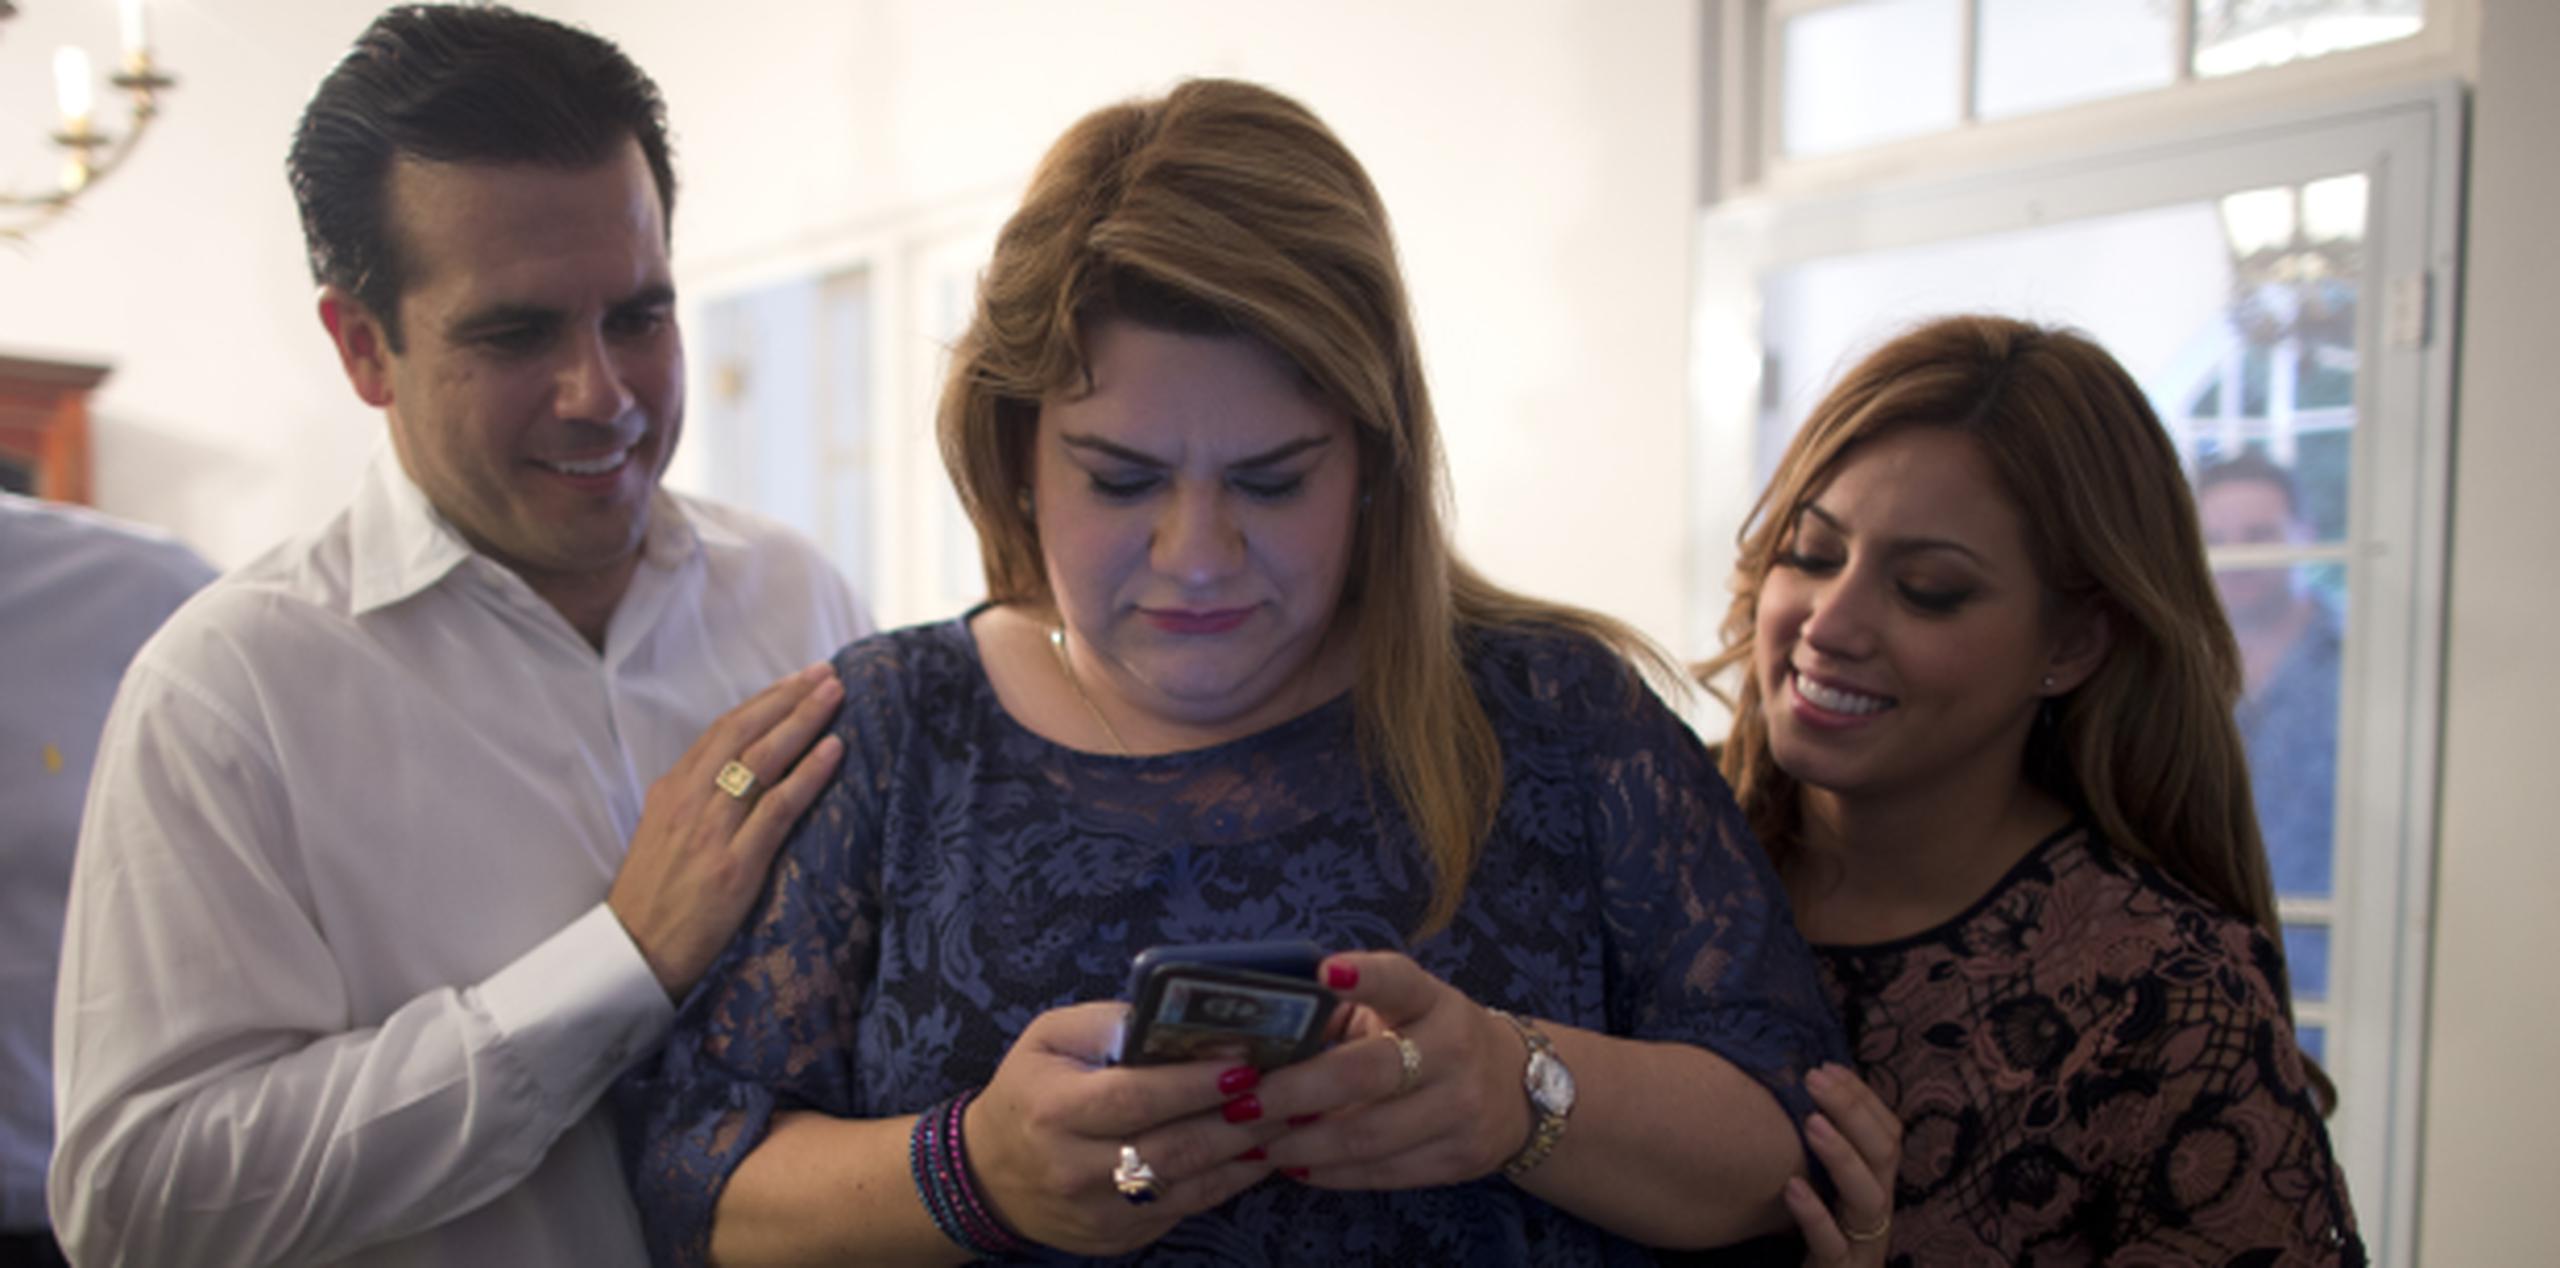 Rosselló y su esposa Beatriz observan a González mientras examina su teléfono. (teresa.canino@gfrmedia.com)